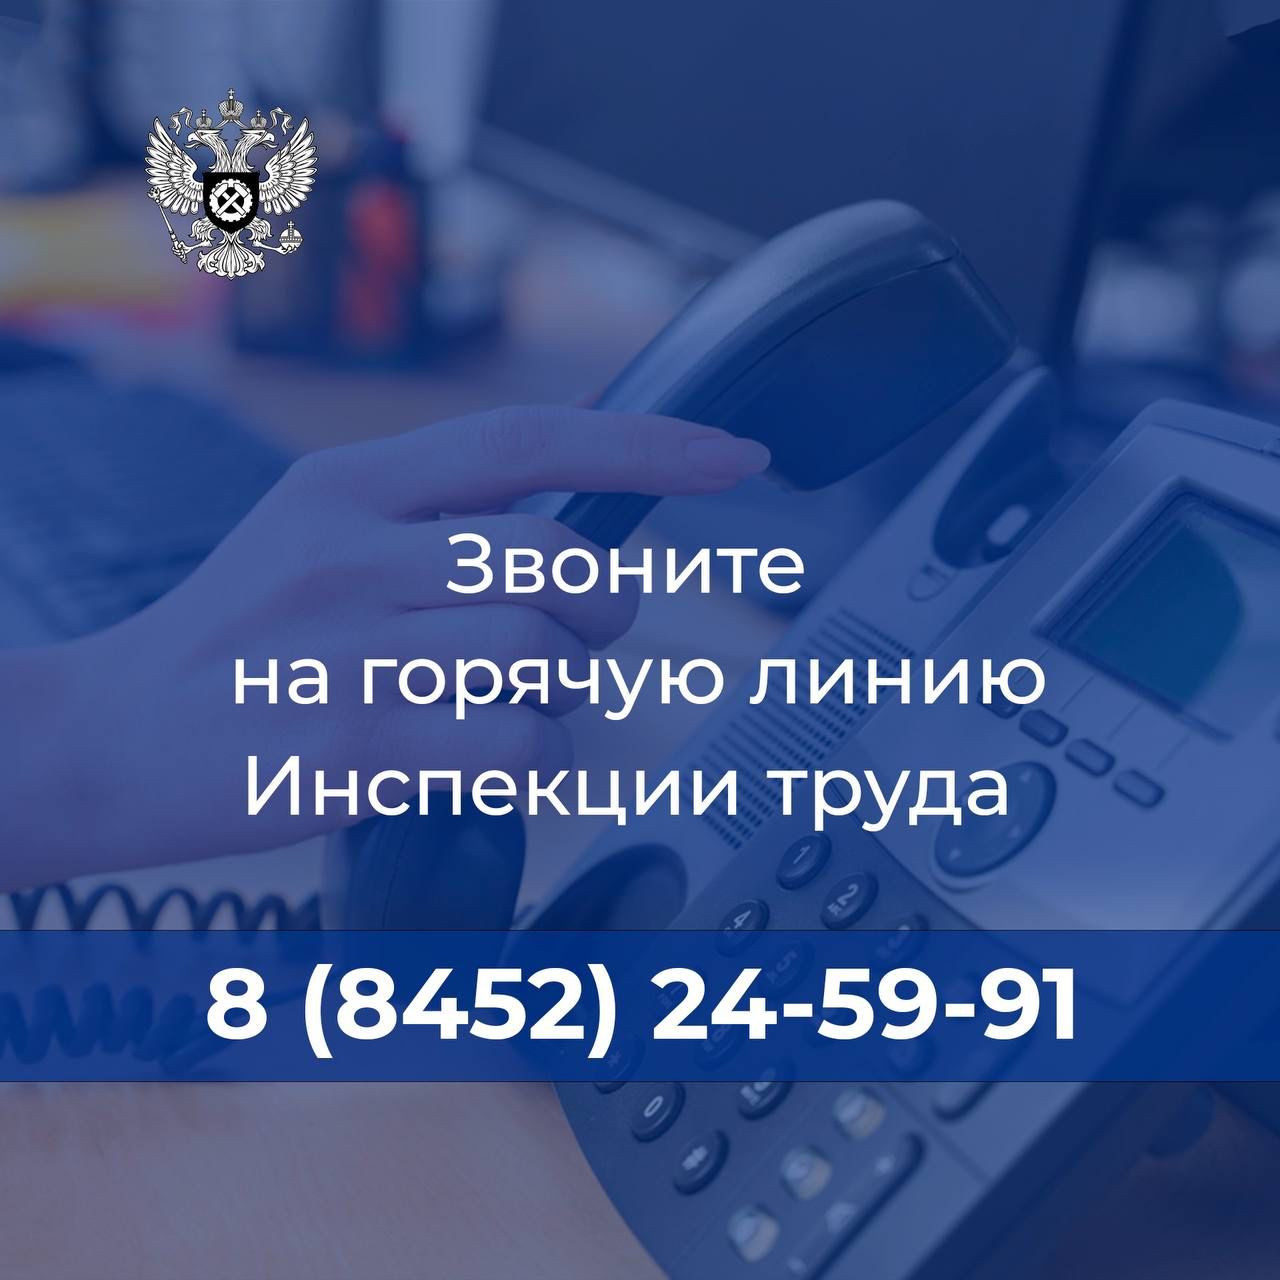 Если ваши трудовые права нарушаются, обращайтесь в Государственную инспекцию труда в Саратовской области по номеру телефона горячей линии 8 (8452)24-59-91.